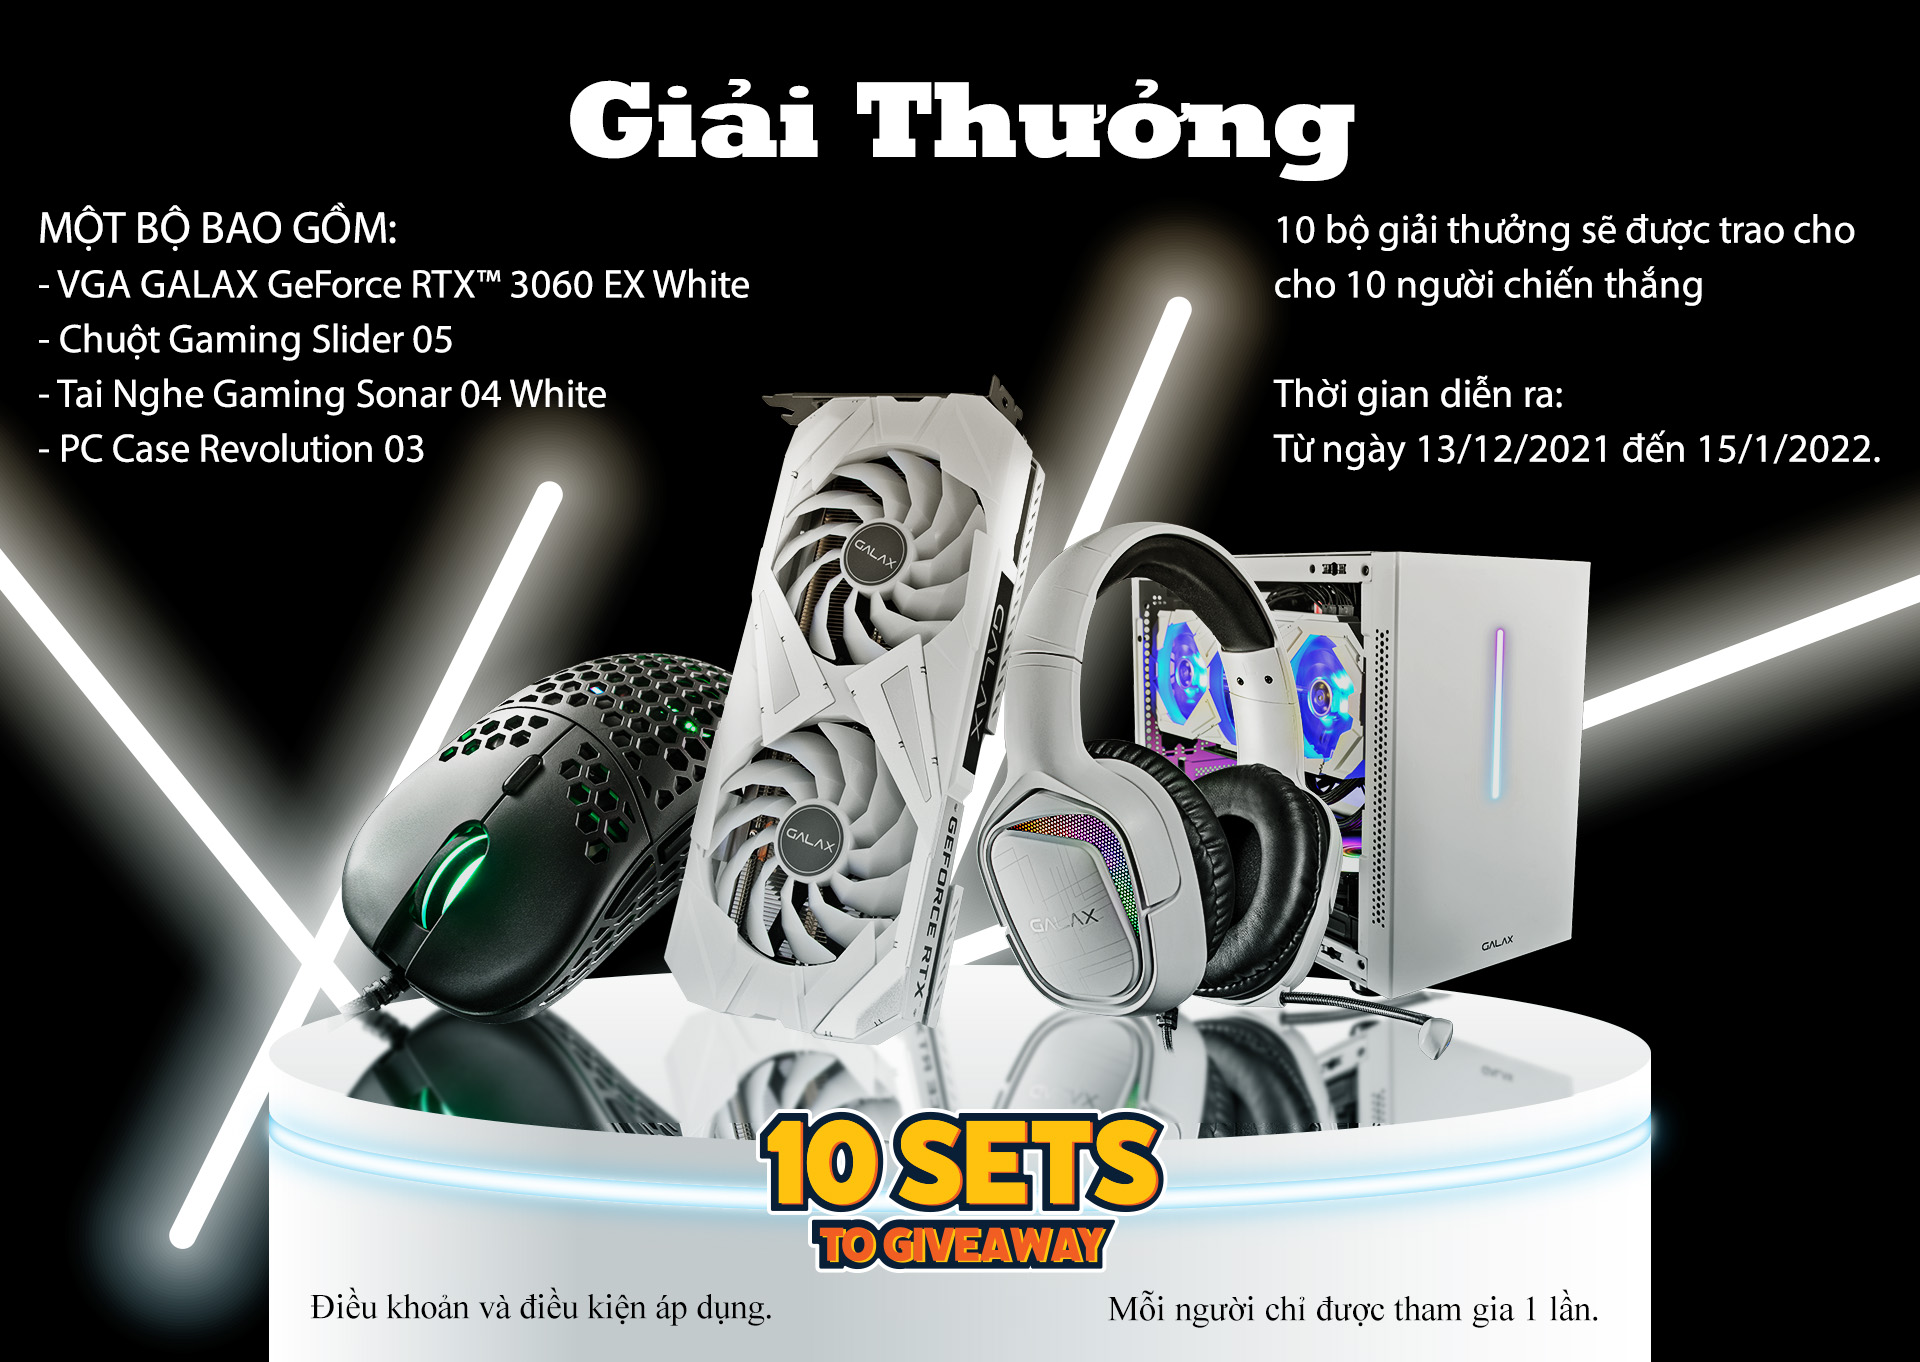 Cách Nhận VGA Galax 3060 EX, Chuột Slider 05, Tai Nghe Sonar 04 Miễn Phí Từ GALAX